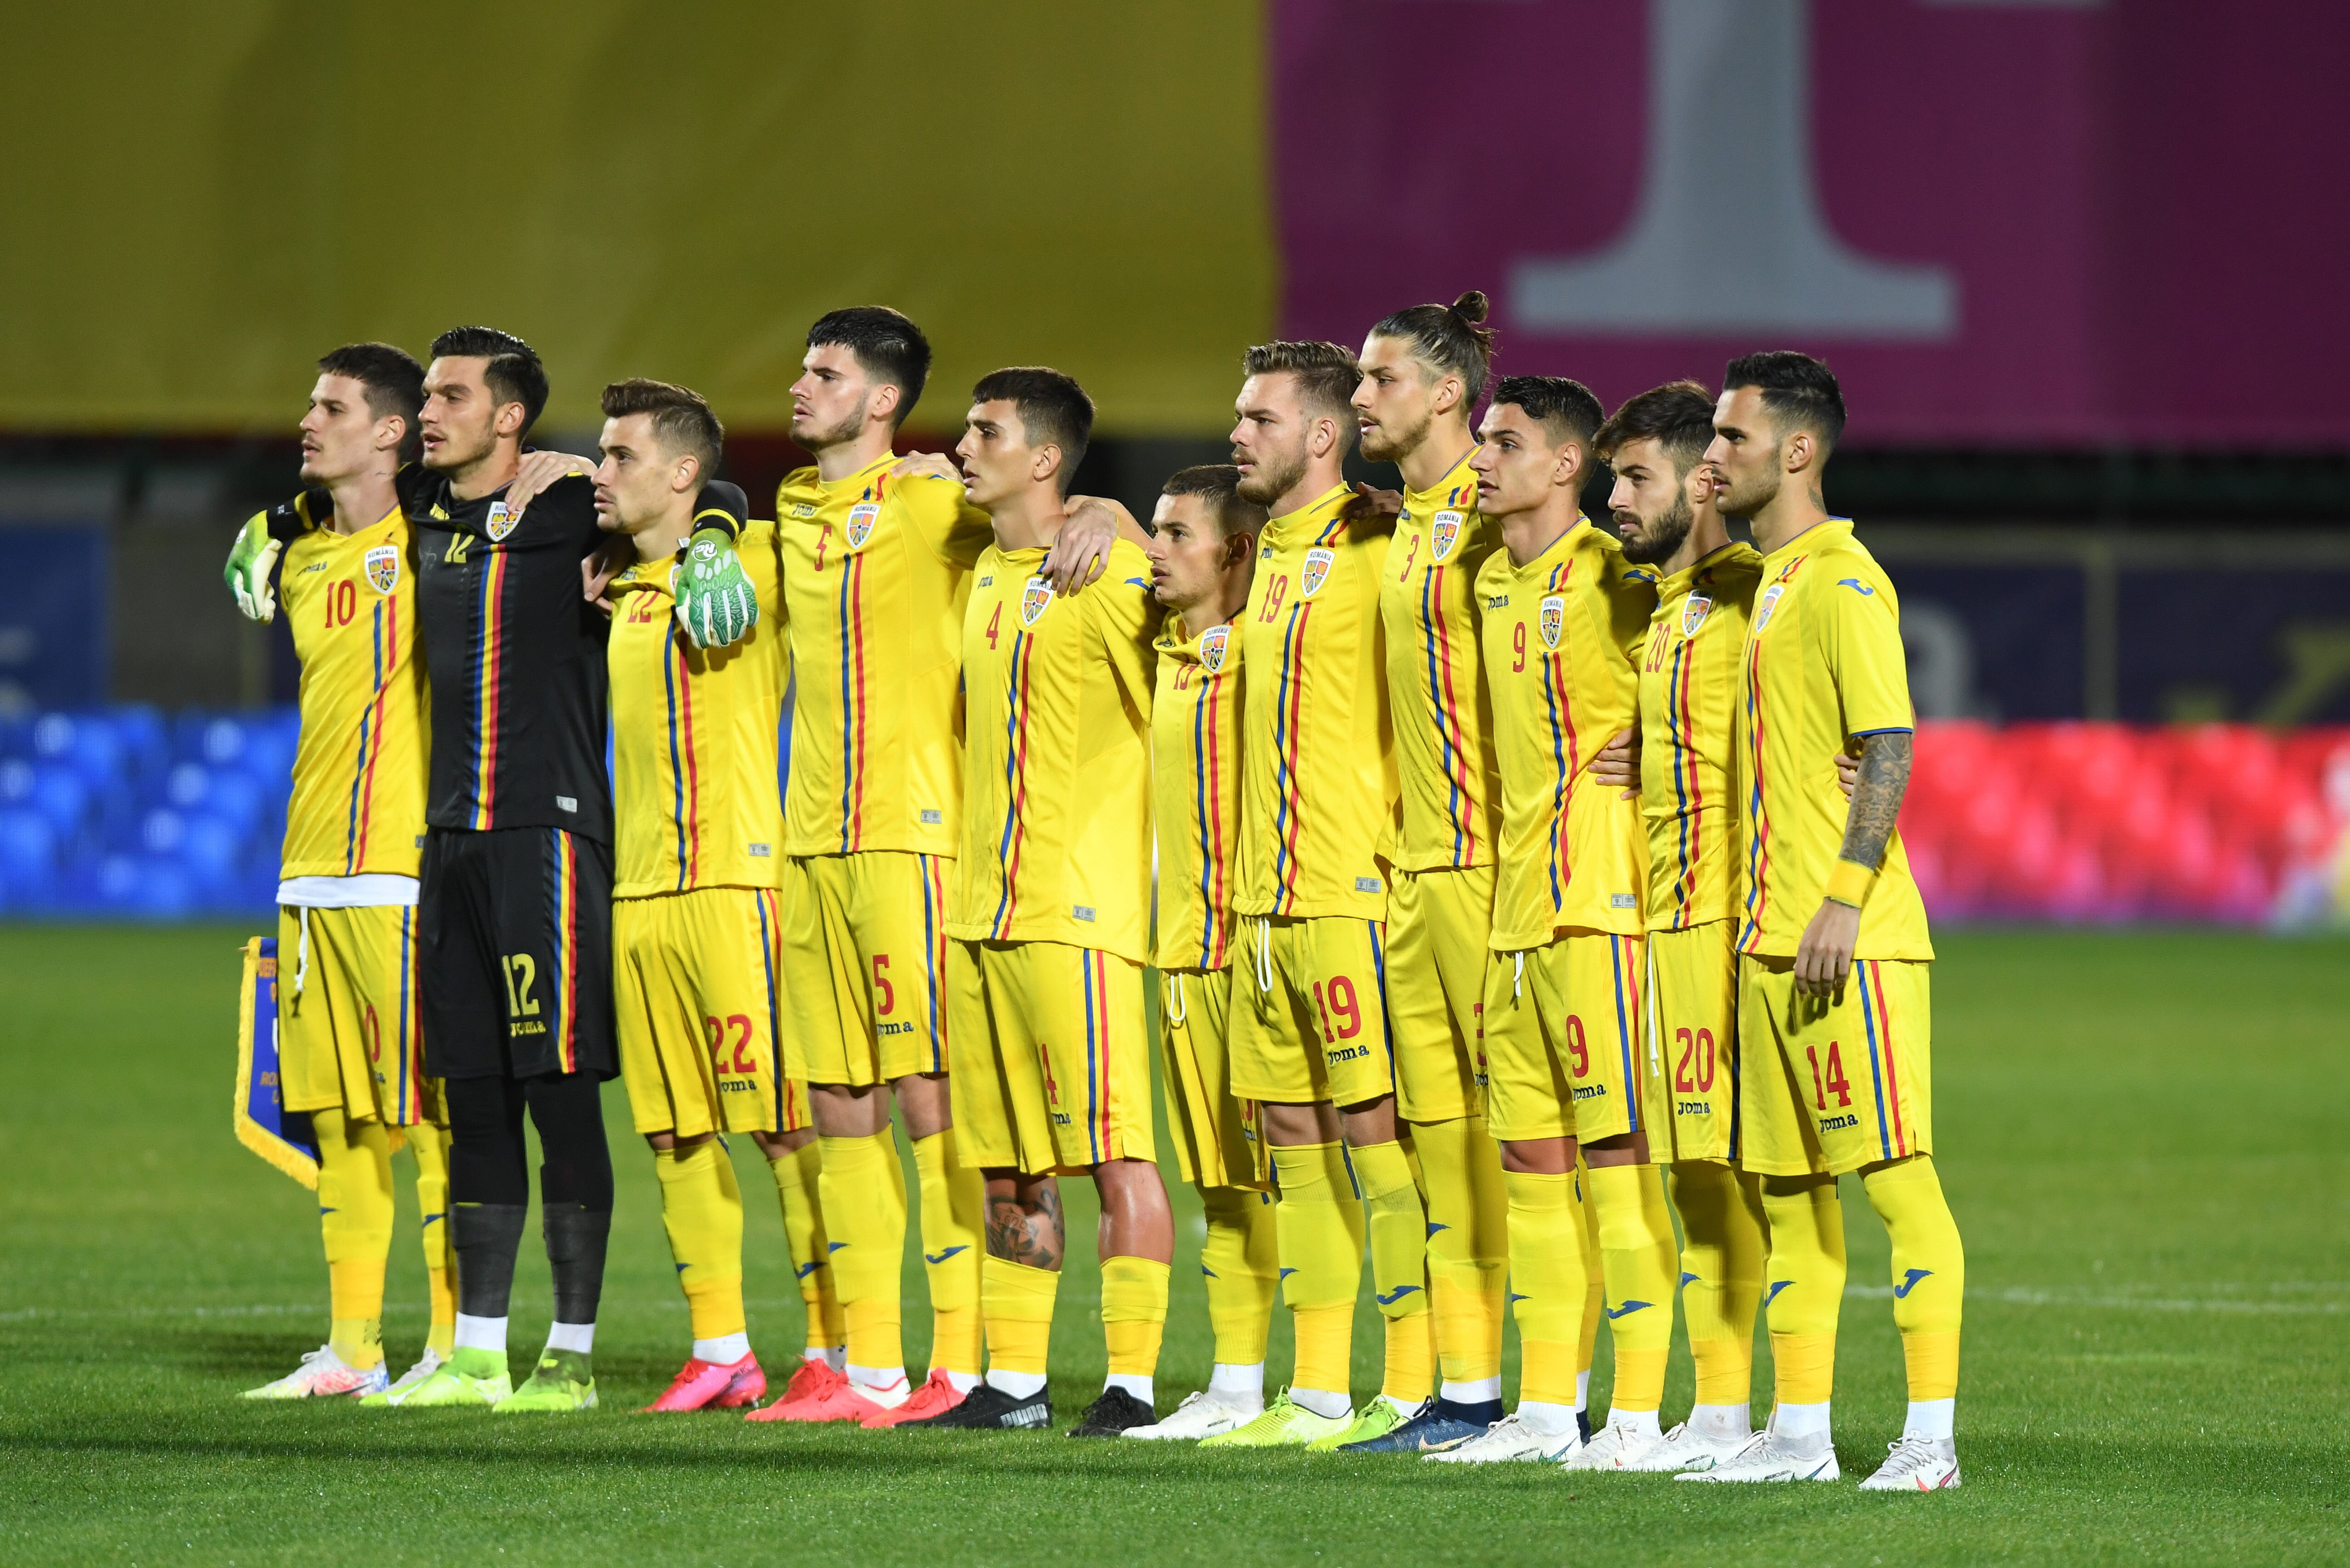 Tricolorii mici au câștigat fără emoții cu Malta, 4-1, în preliminariile pentru EURO2021